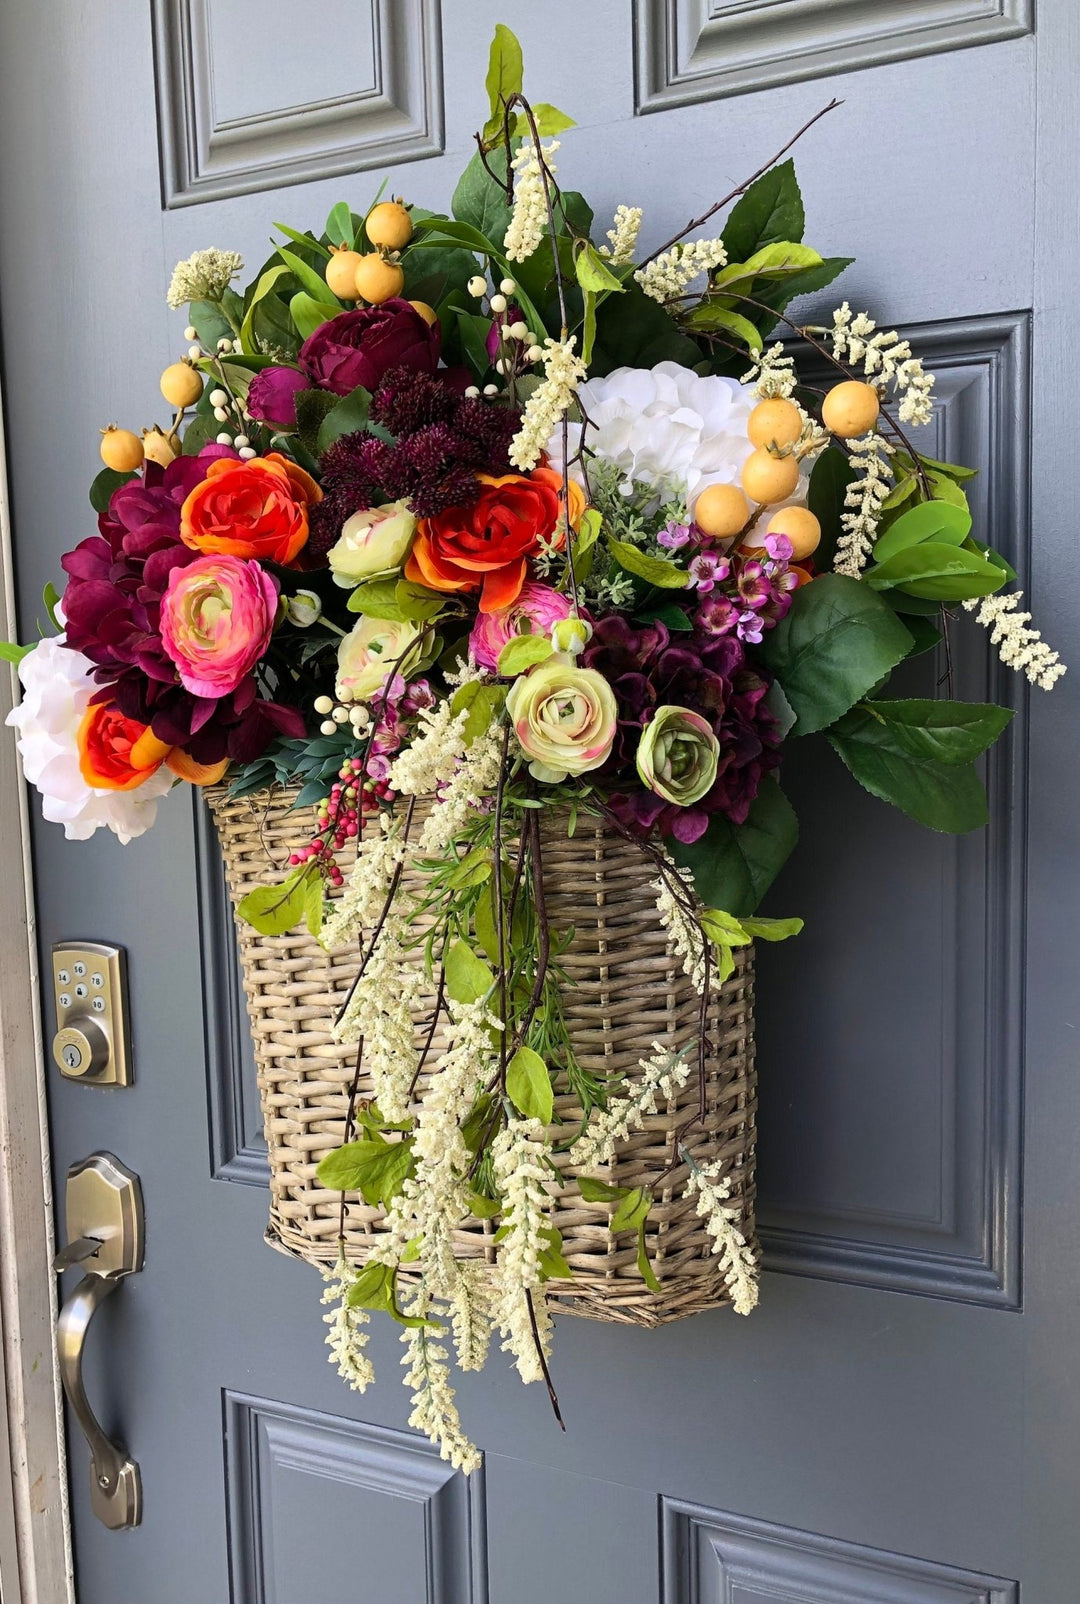 Front Door Wicker Basket Wreath